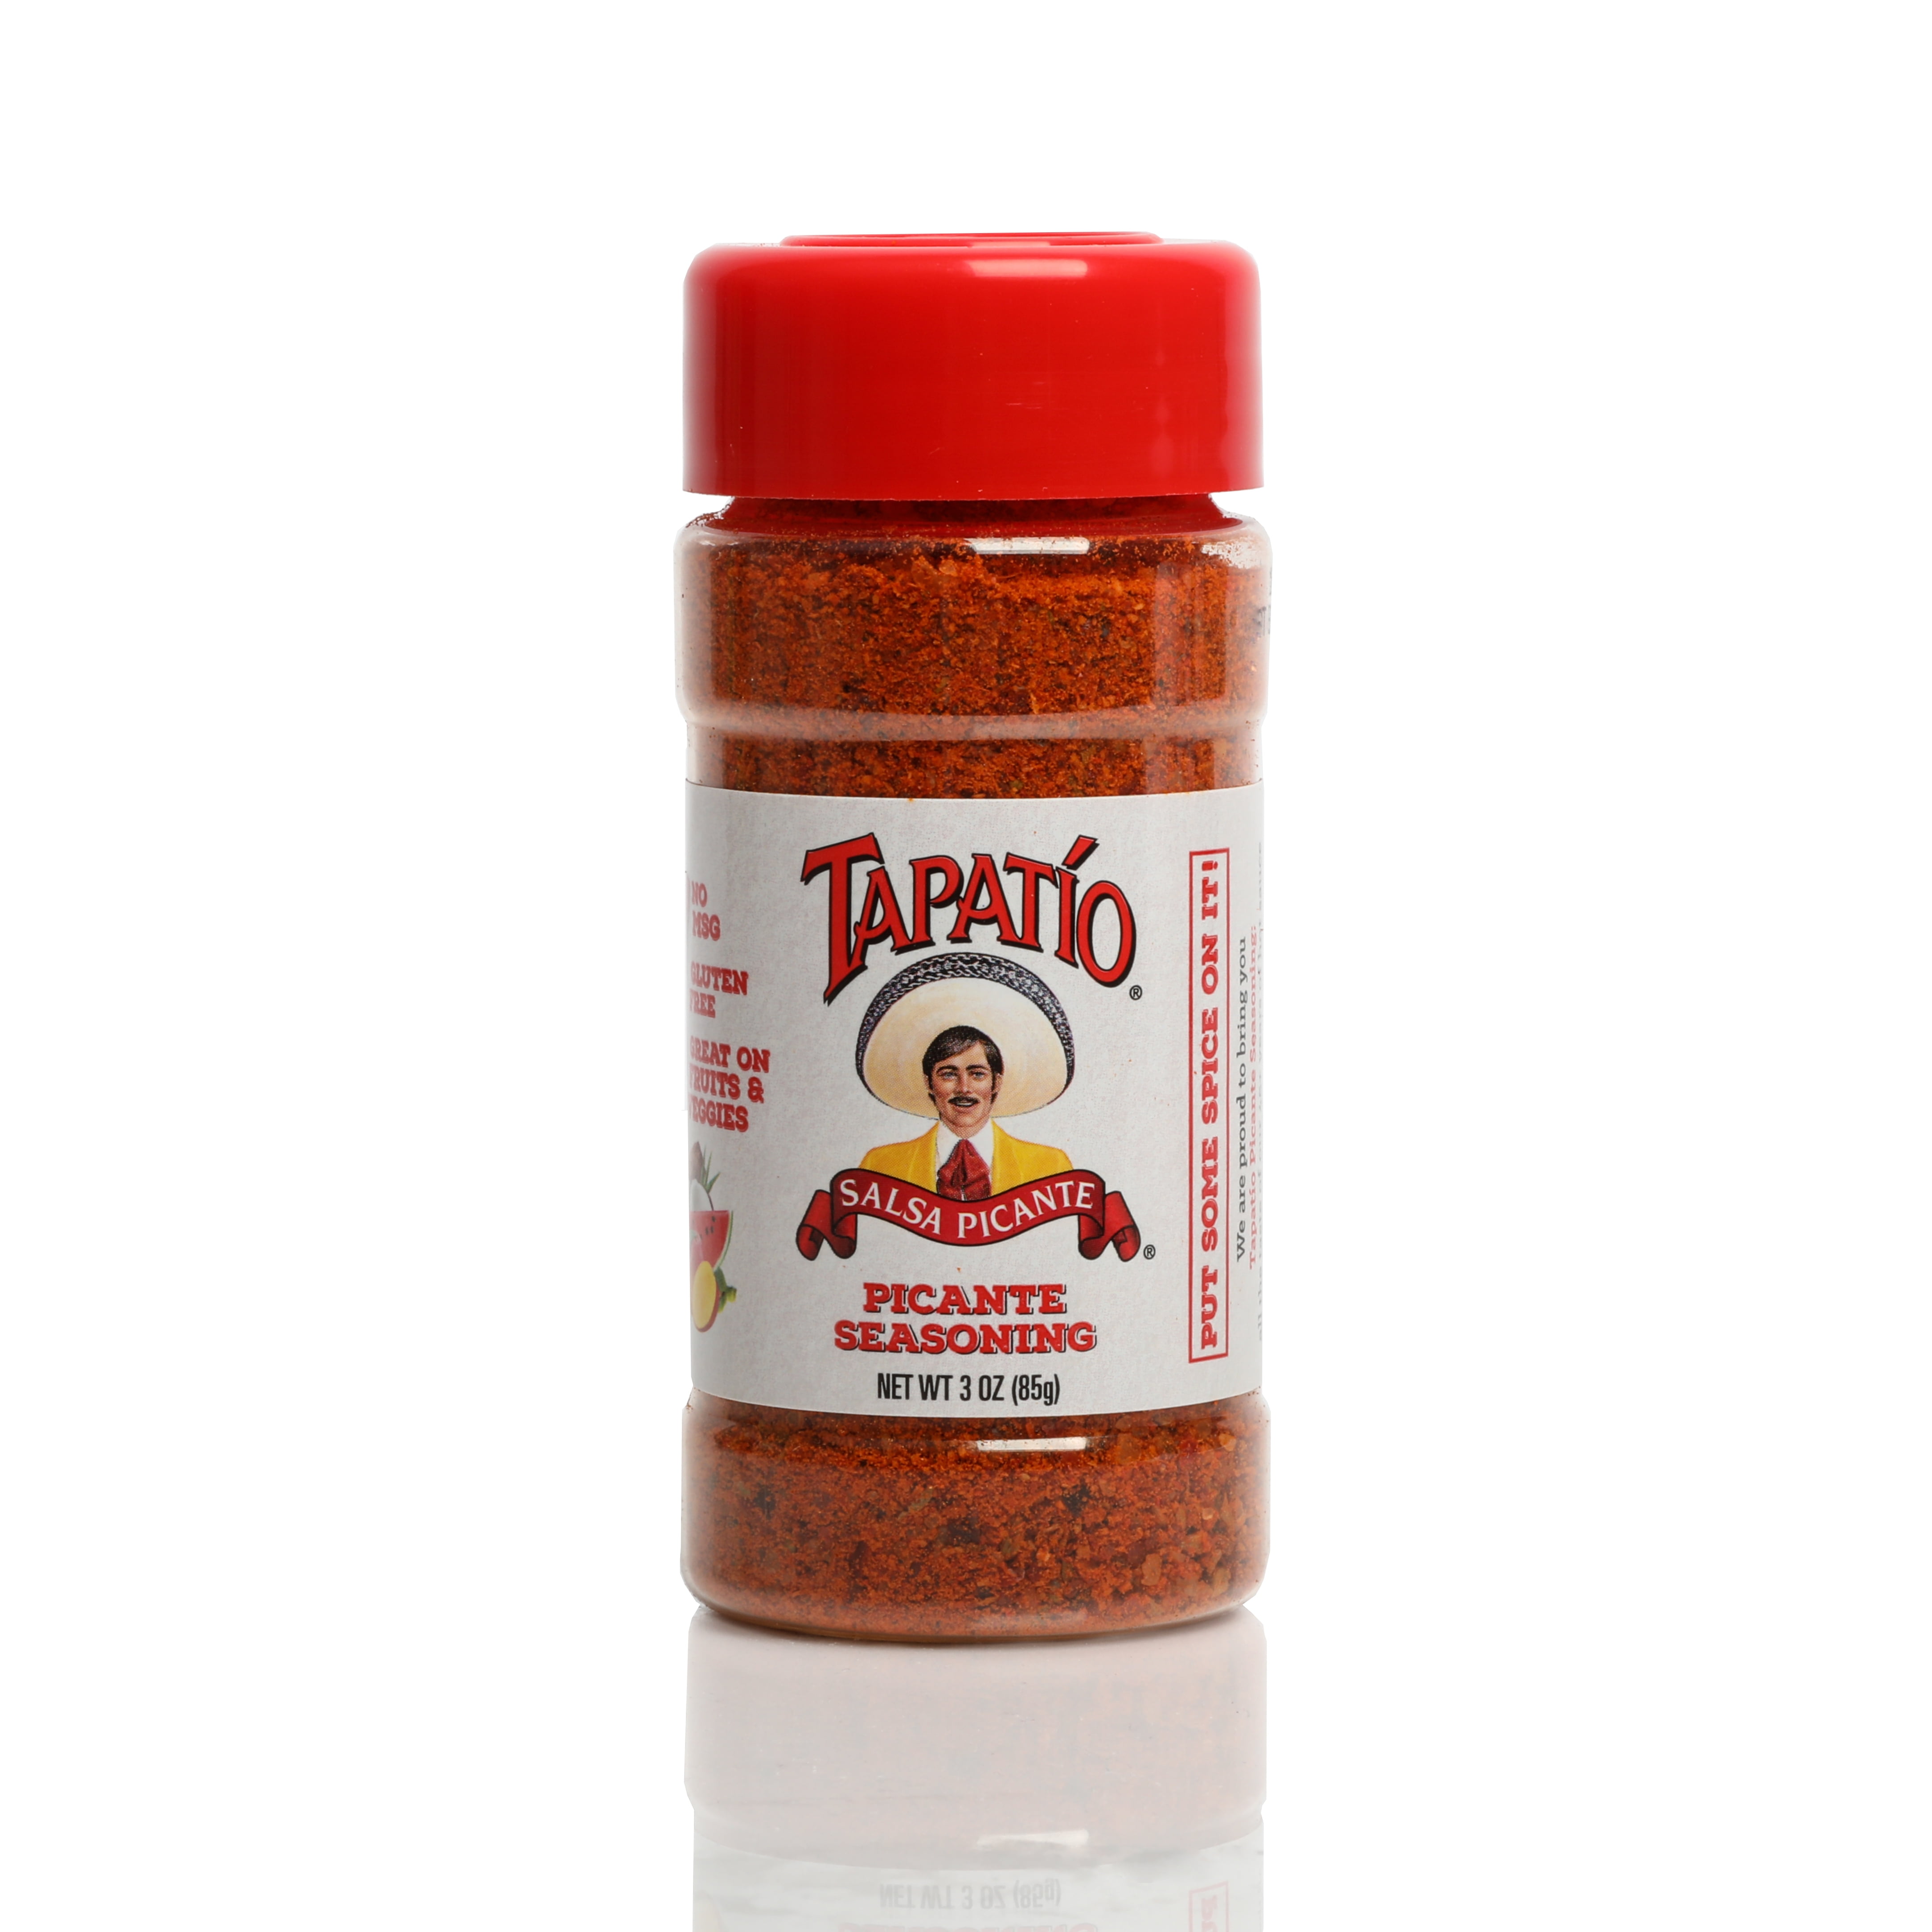 Tapatio Picante Seasoning. 5 oz